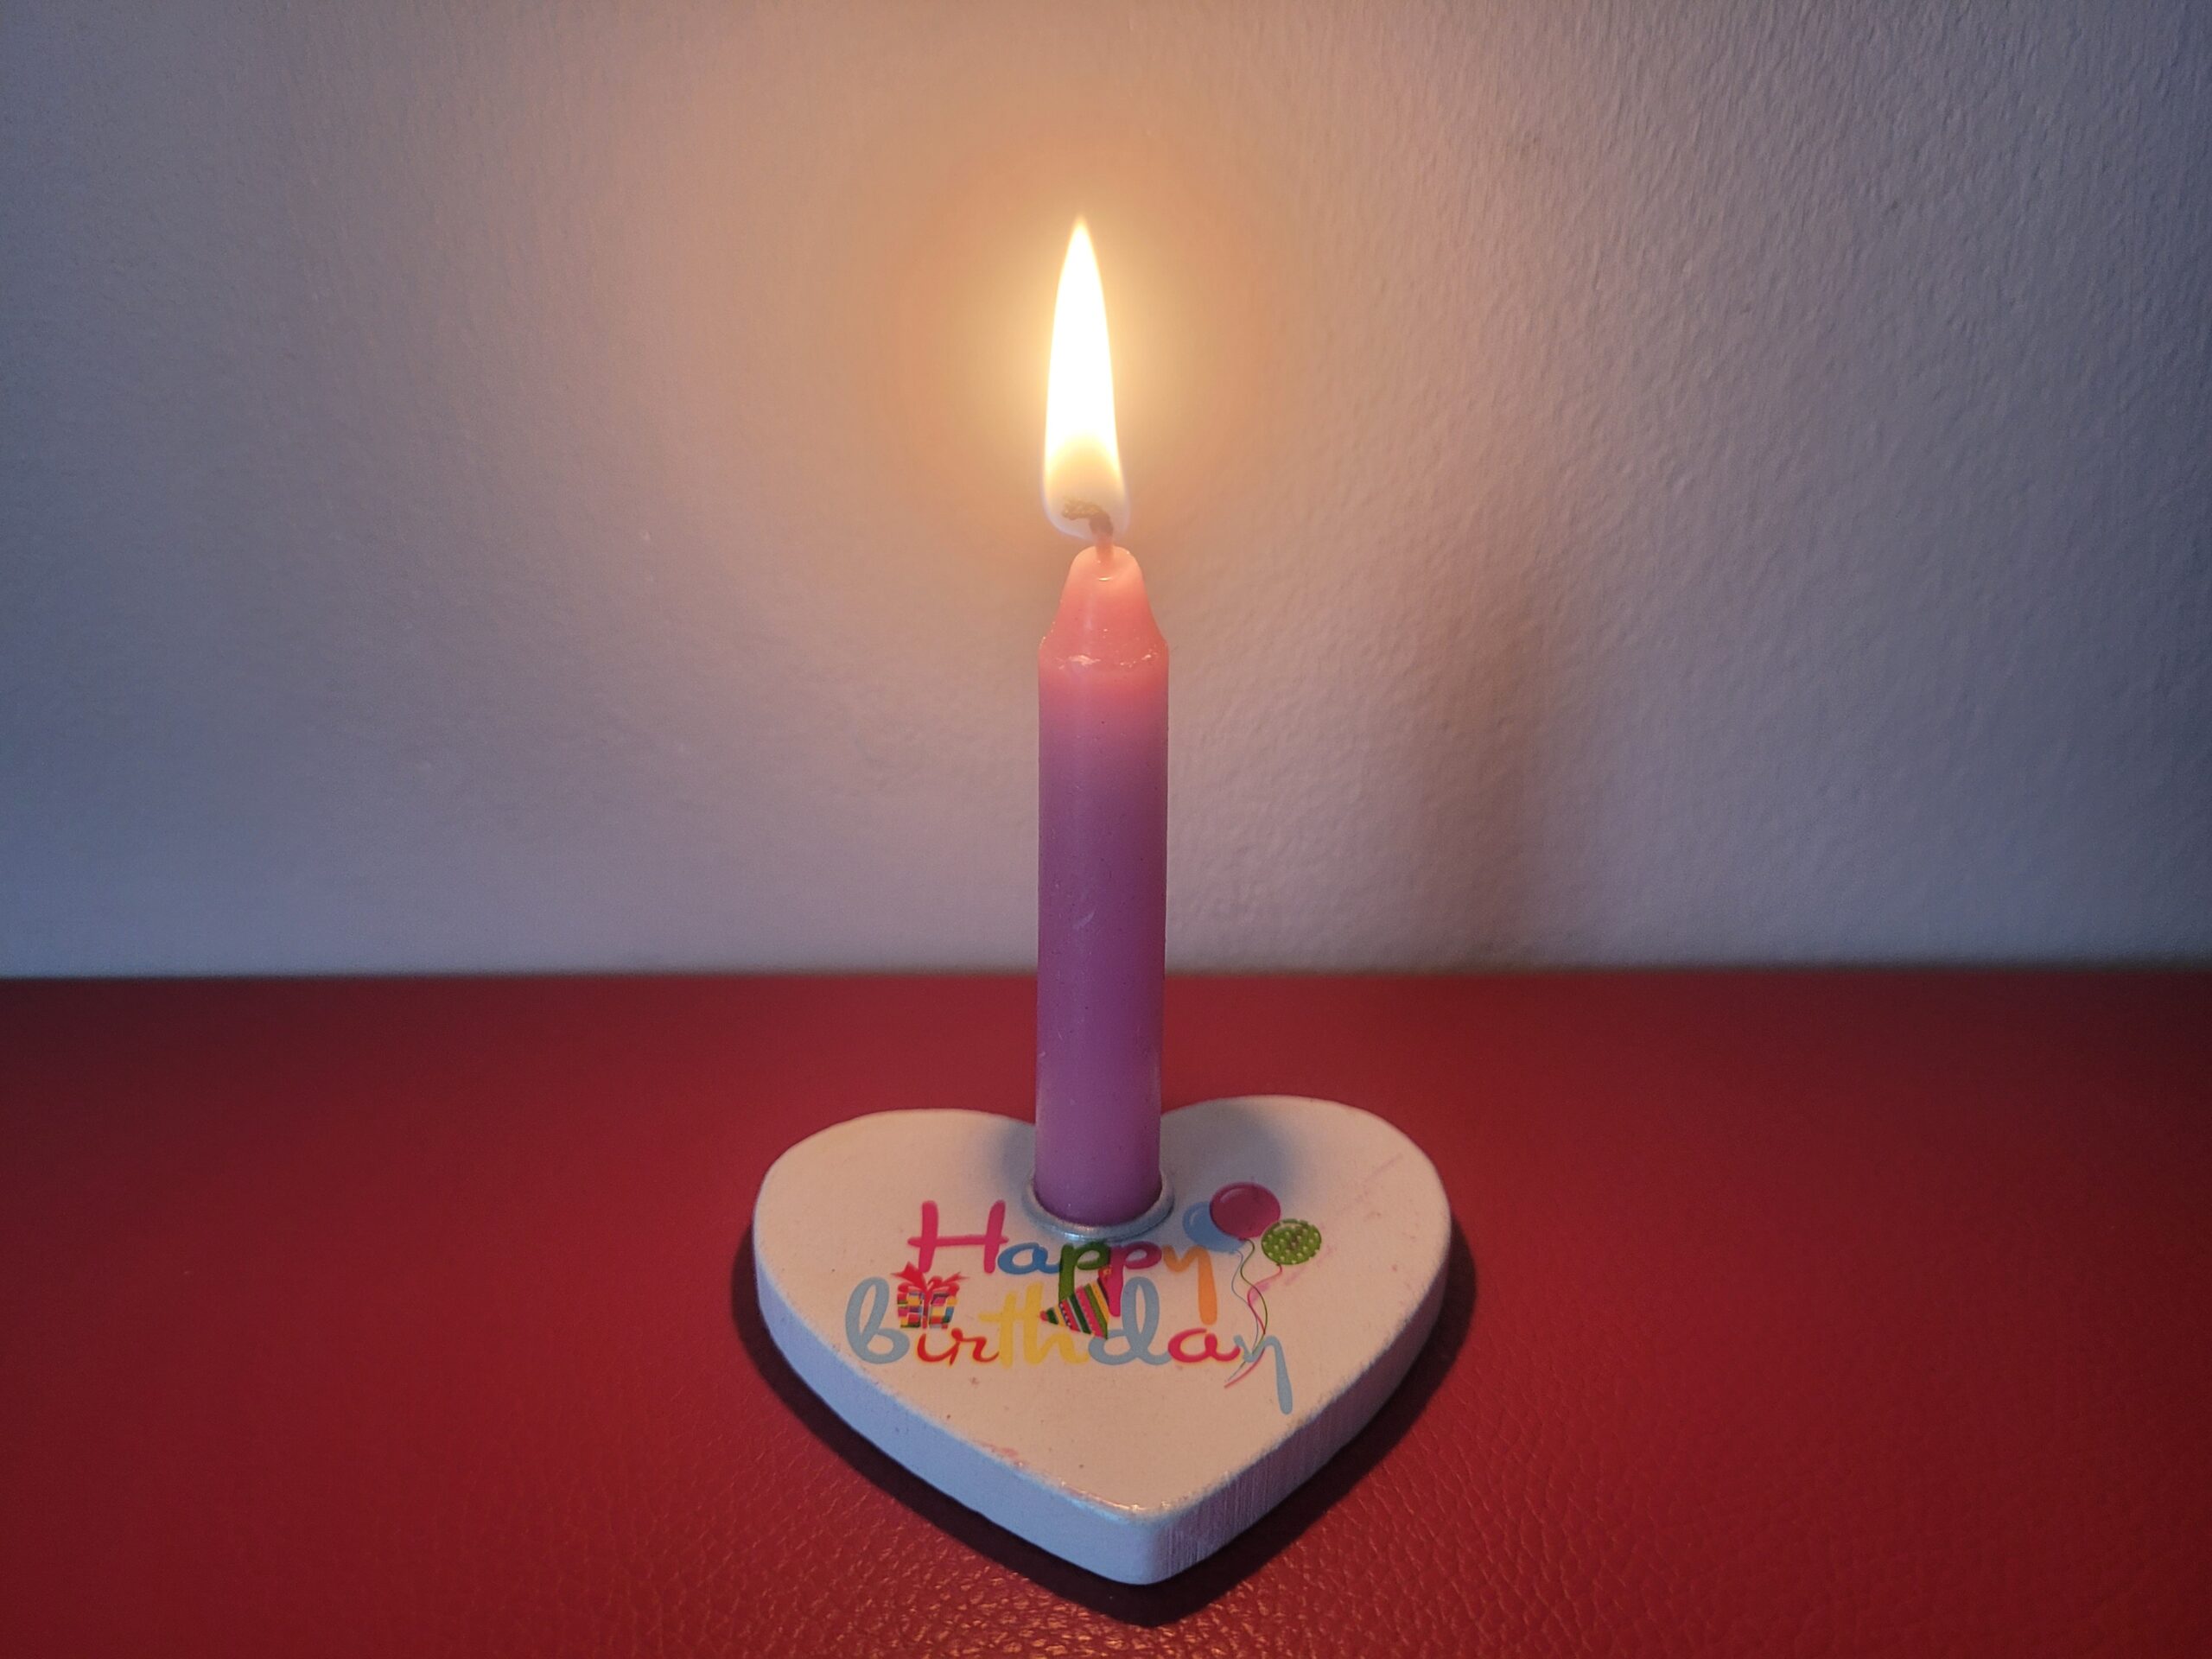 Happy Birthday Kerzenständer mit brennender Kerze ein Jahr nach dem selbstständig machen mit Yoga